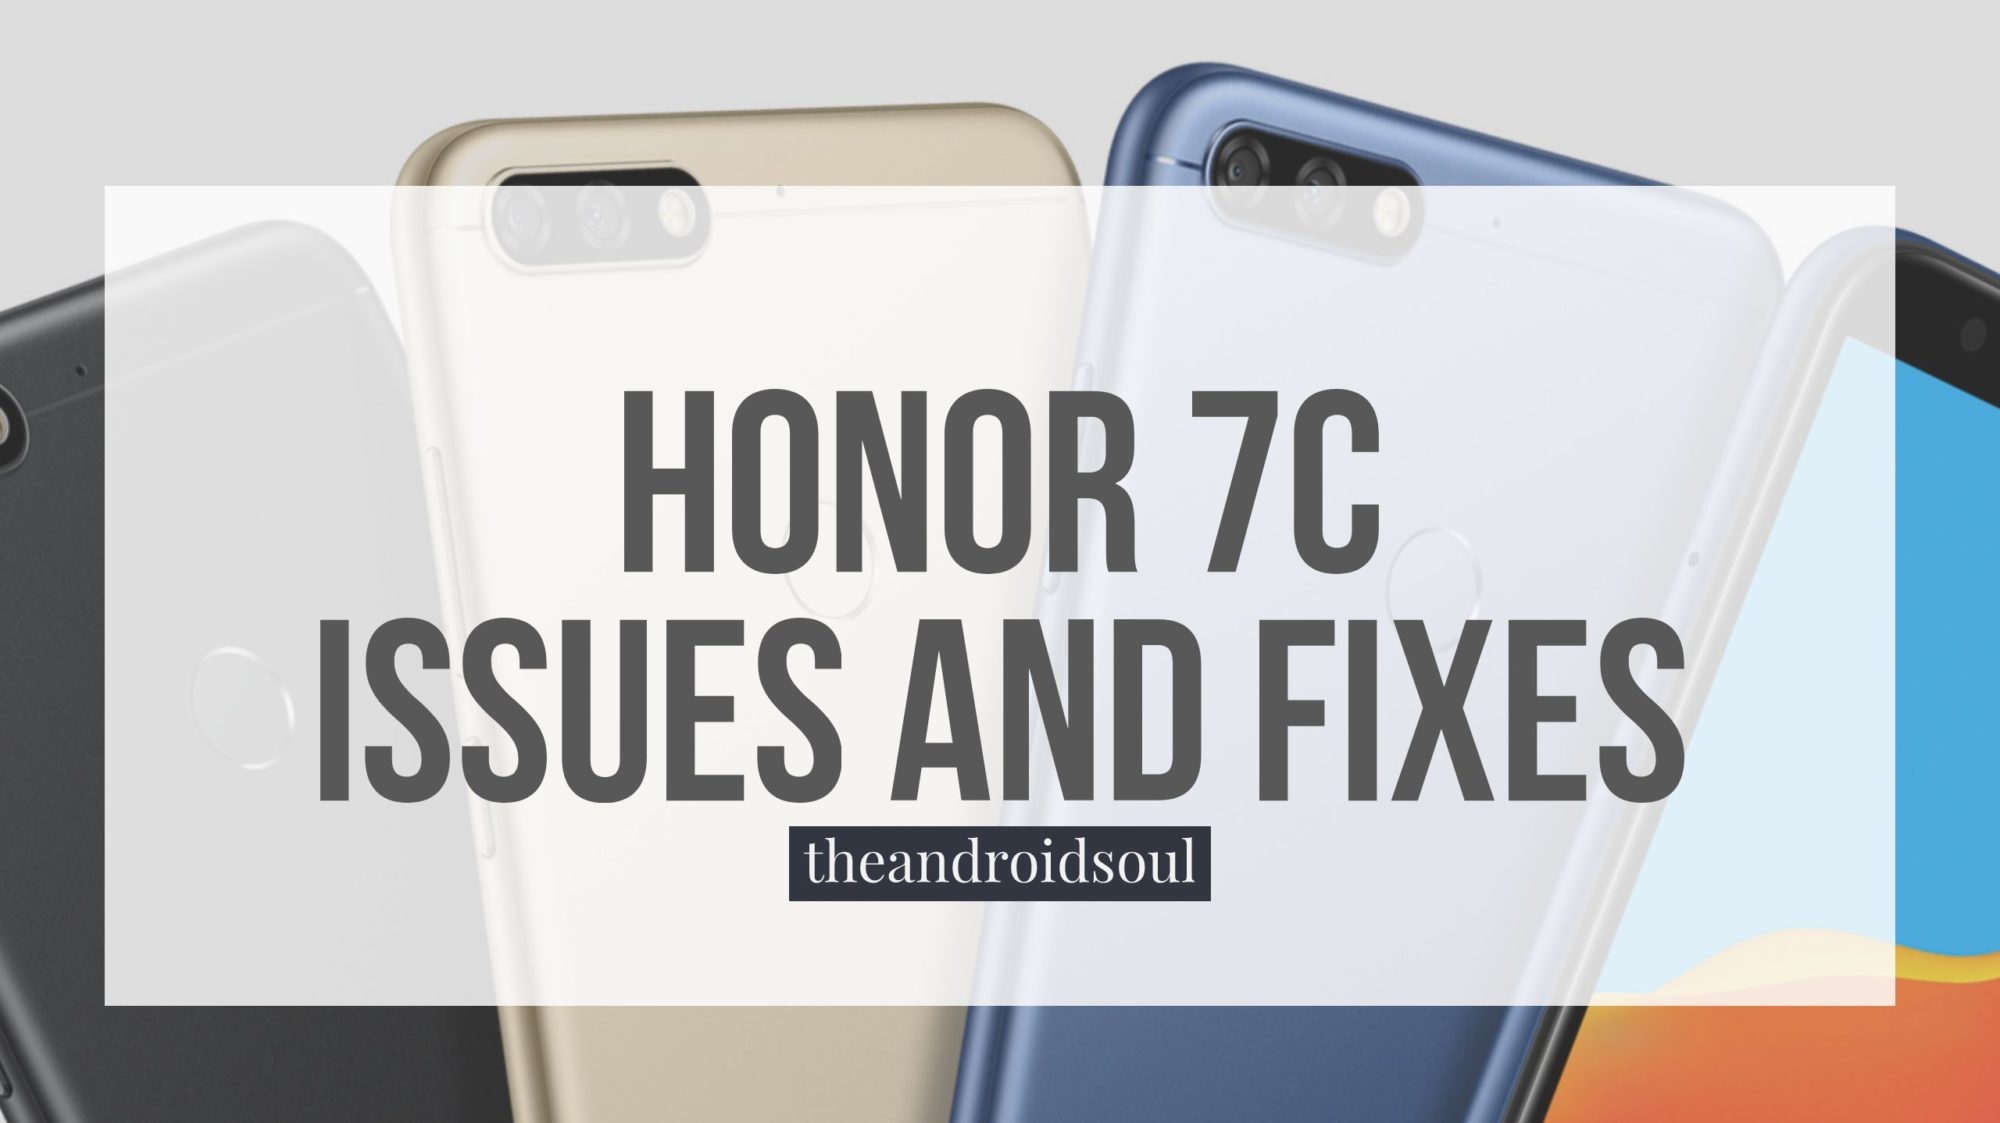 Aquí hay problemas comunes de Honor 7C y sus respectivas soluciones